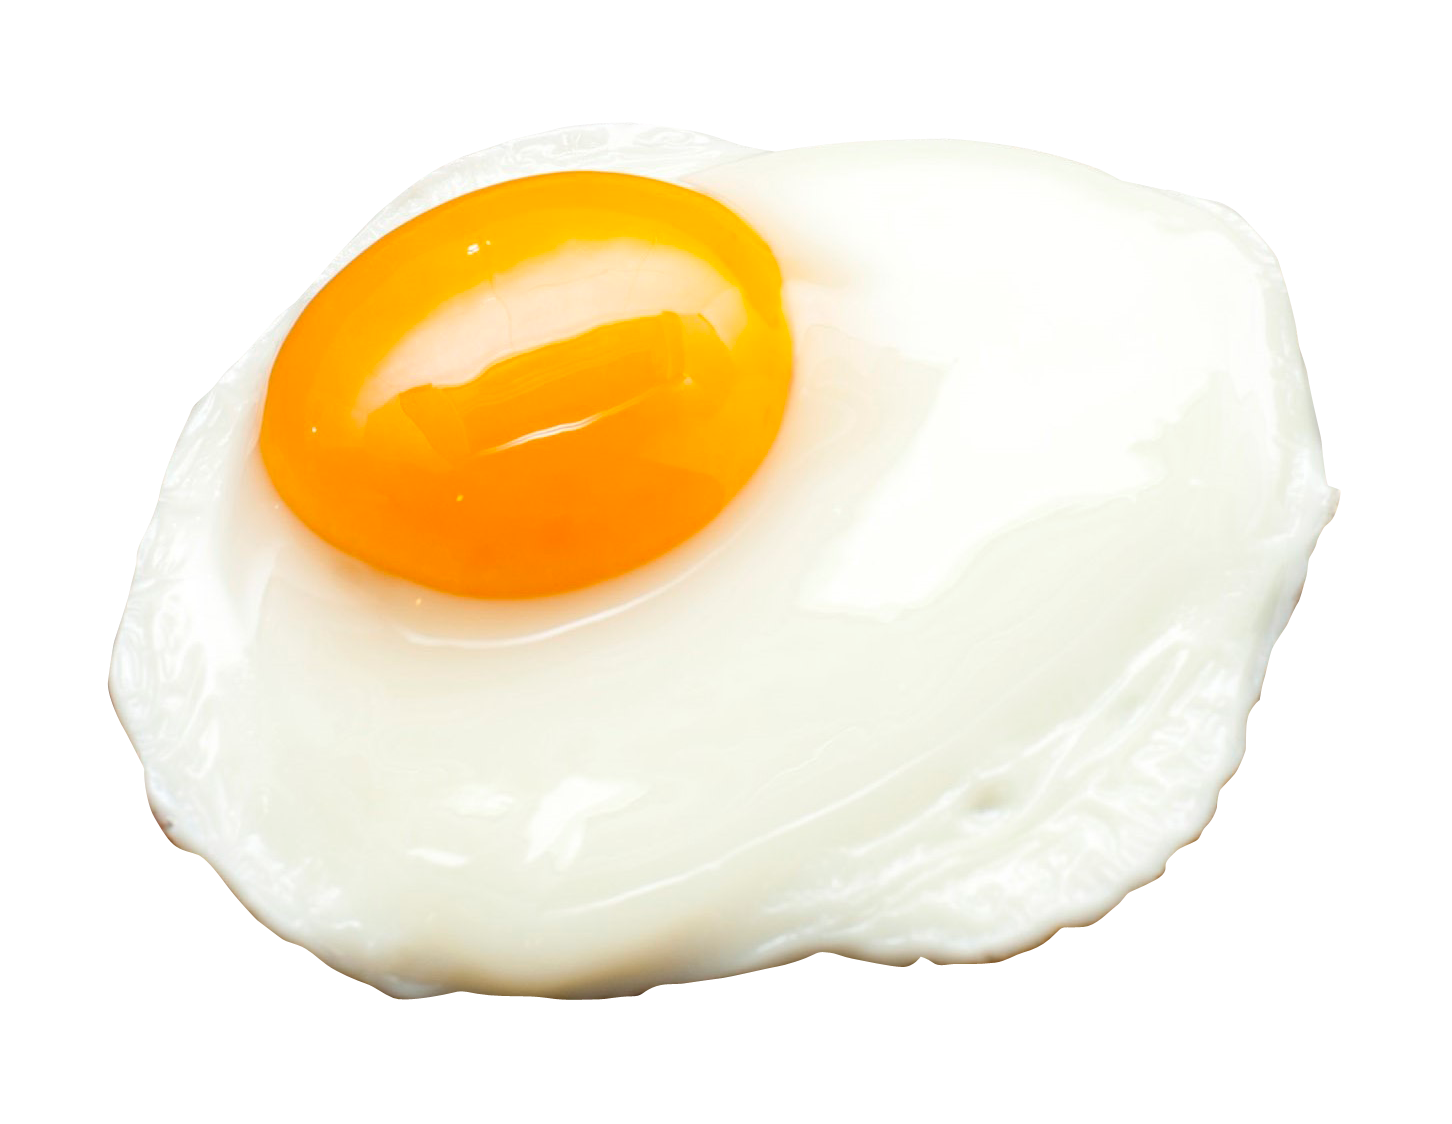 Fried Egg Half Download Free Image PNG Image